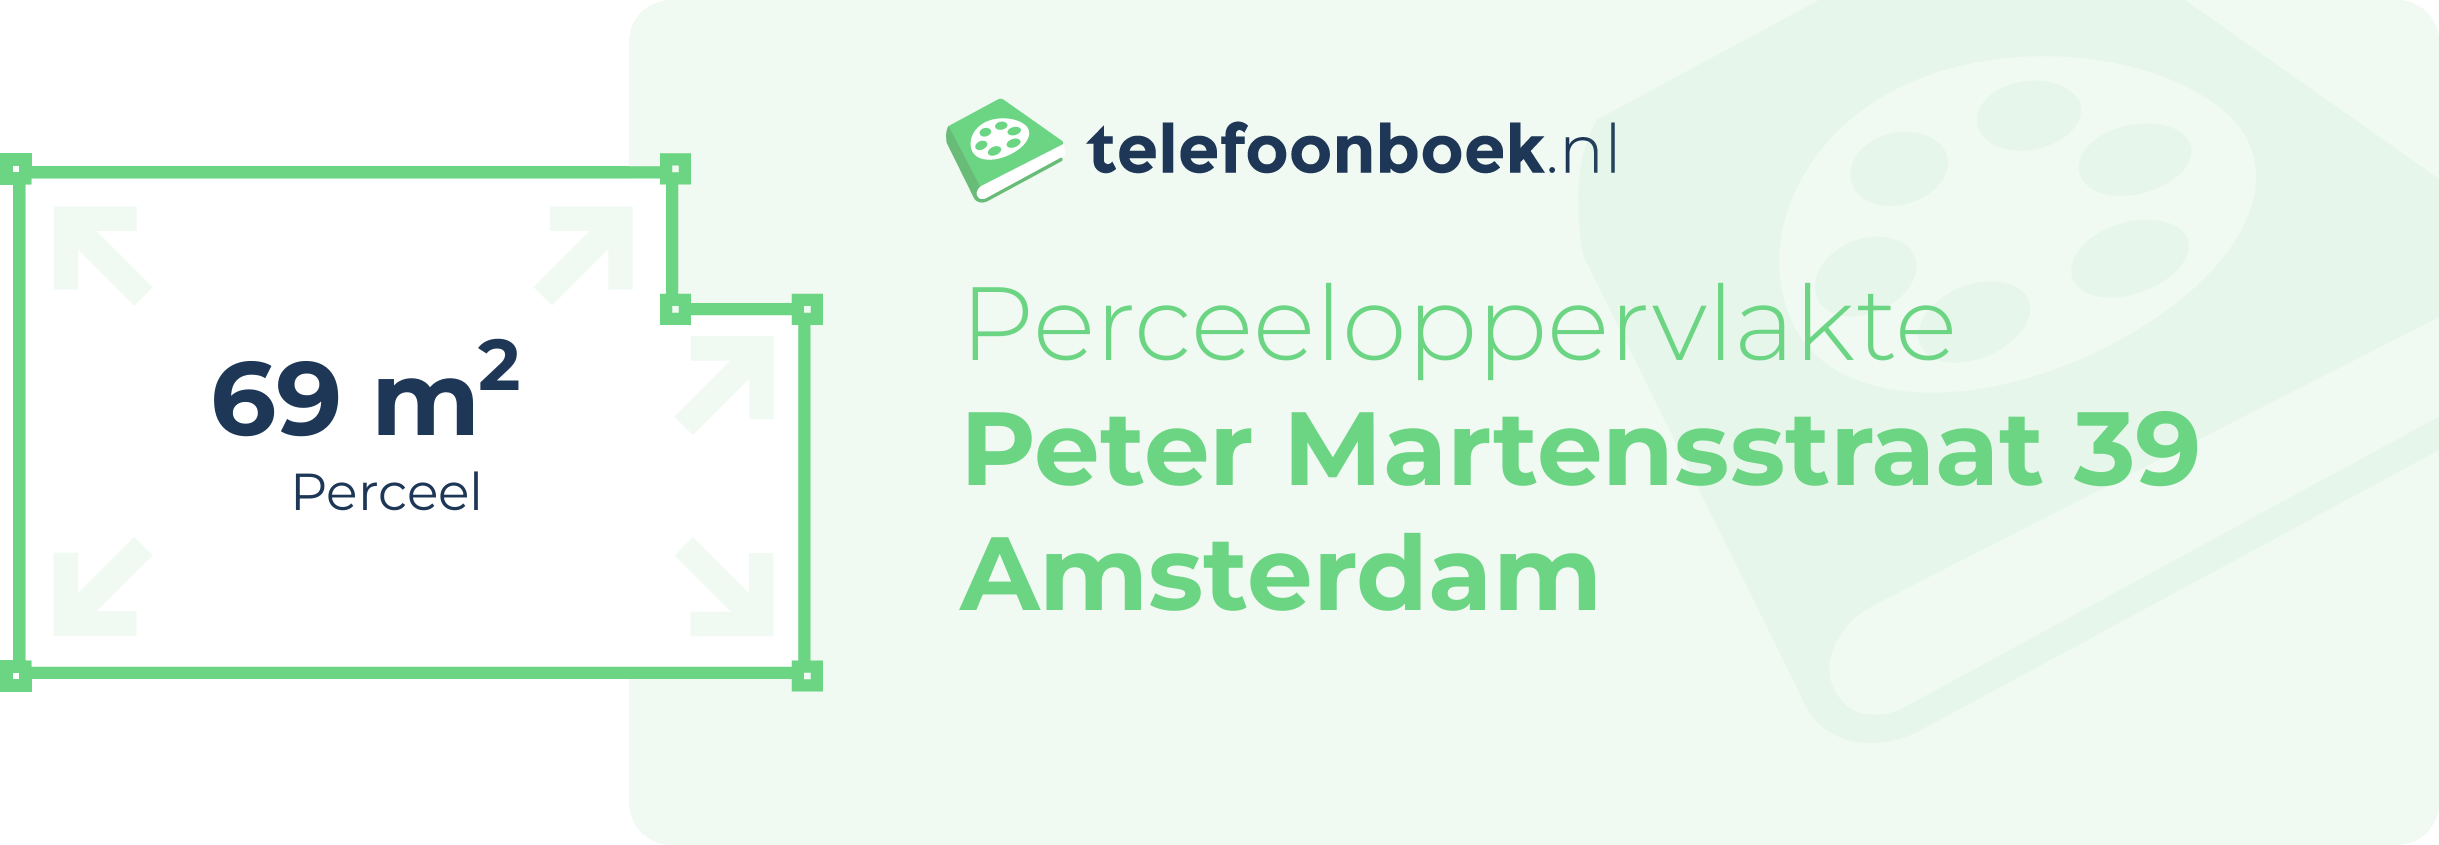 Perceeloppervlakte Peter Martensstraat 39 Amsterdam